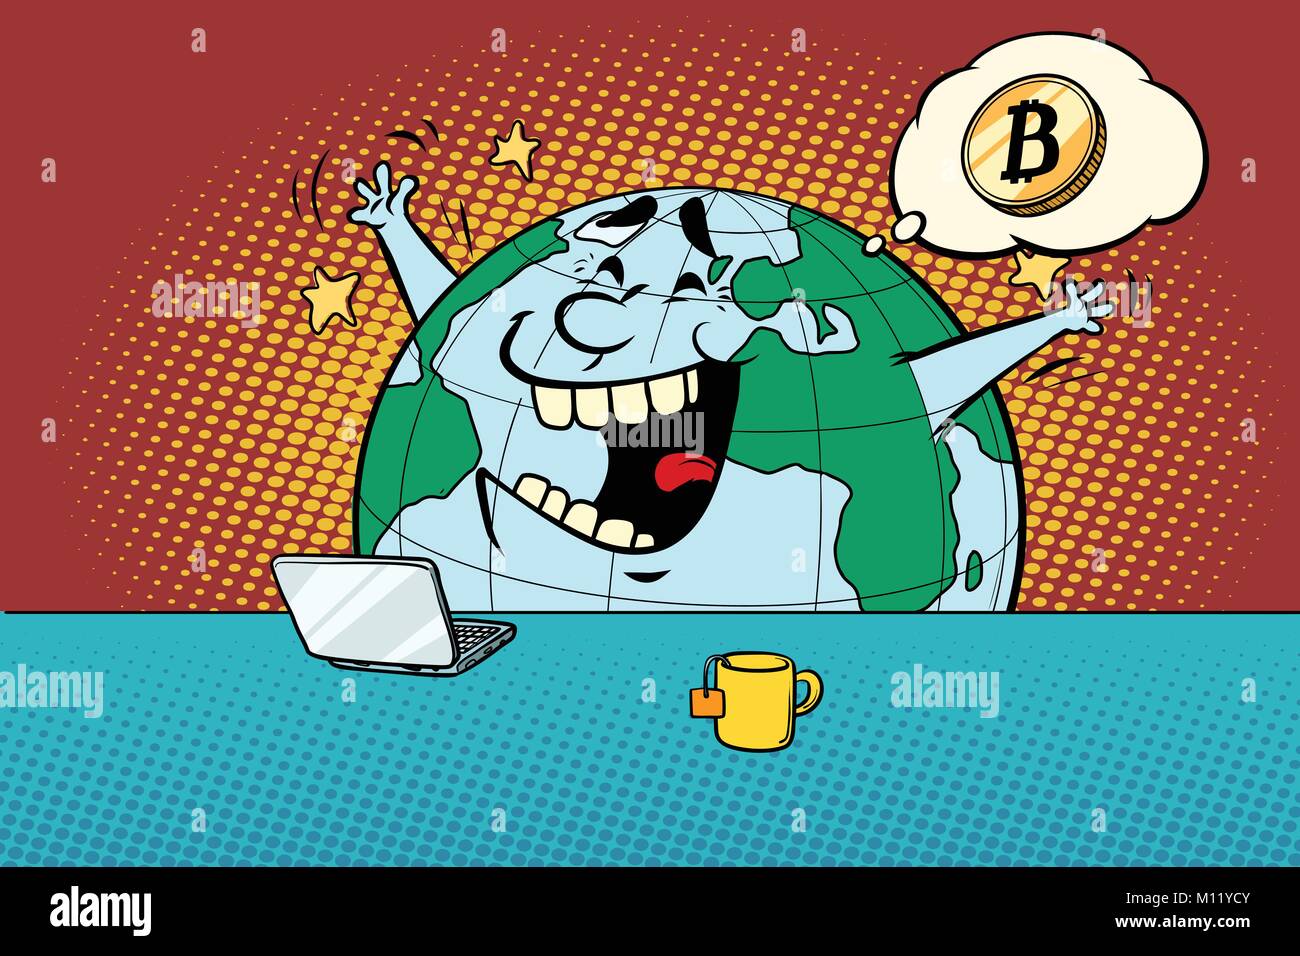 Les bonnes nouvelles au sujet de bitcoin. Bande dessinée caricature dessin illustration rétro pop art Illustration de Vecteur